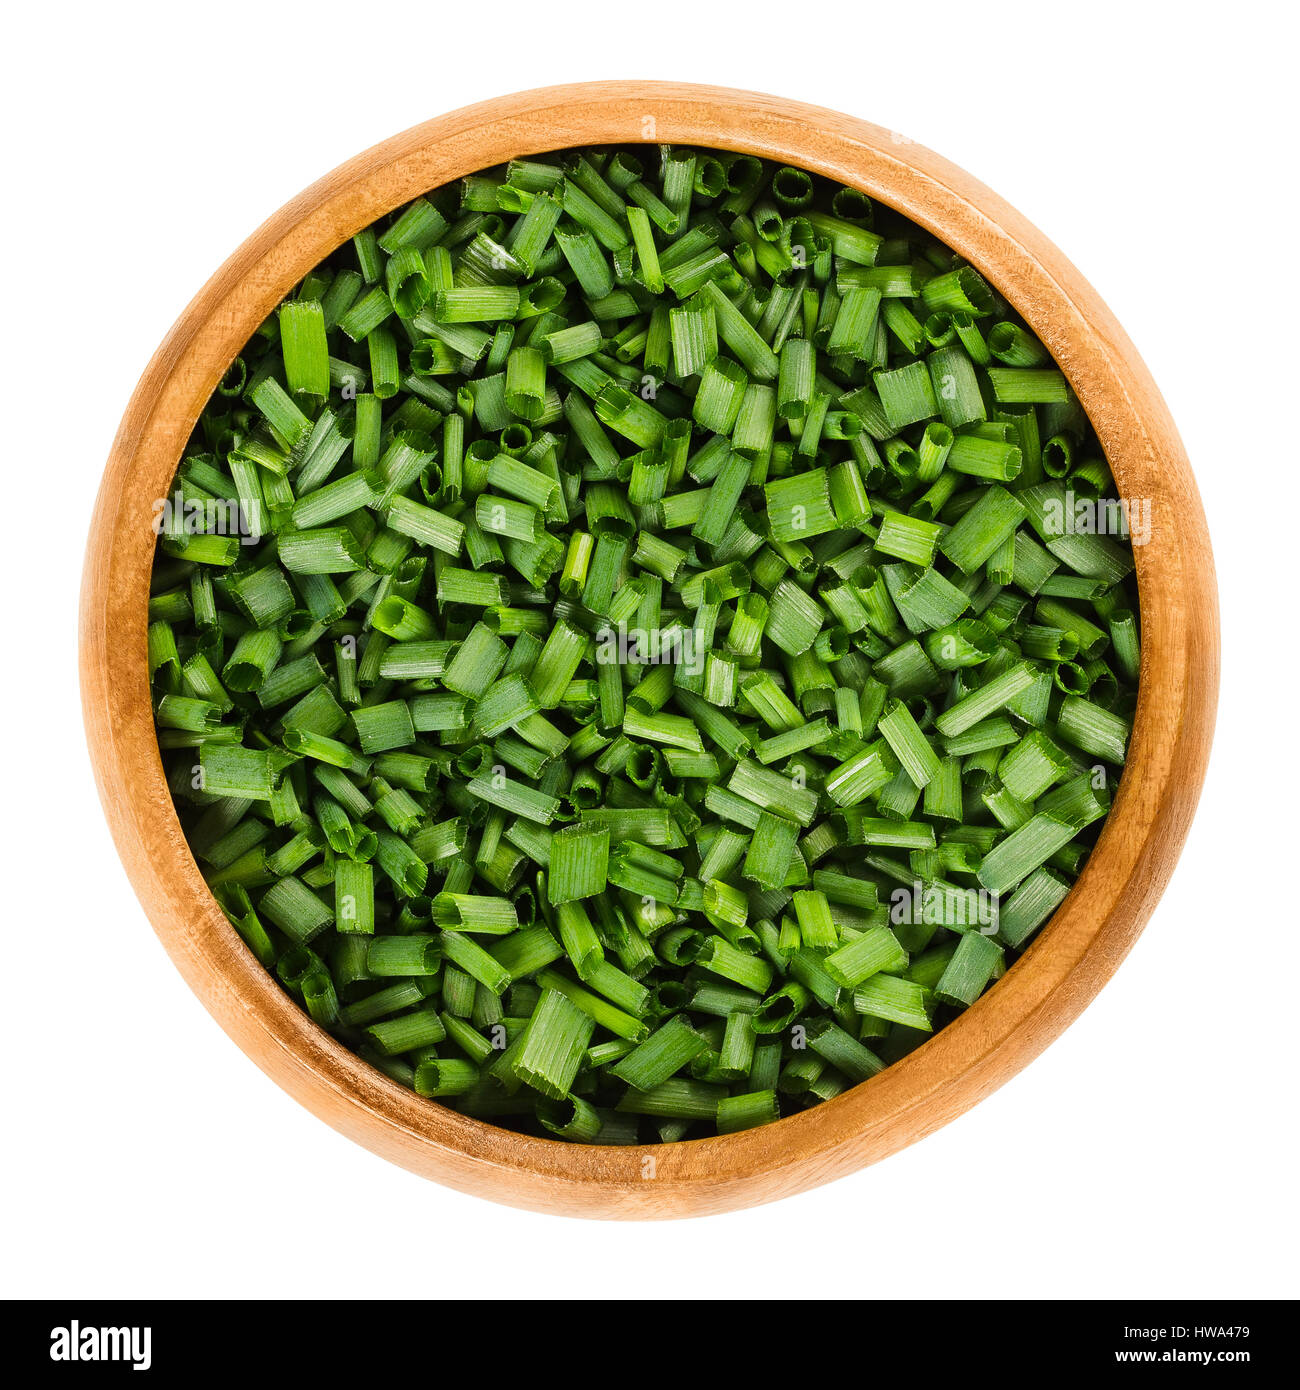 Schnittlauch in Holzschale. Frische grüne essbare Kräuter von Allium Schoenoprasum, als Zutat für Suppen, Fisch und Kartoffeln verwendet. Stockfoto